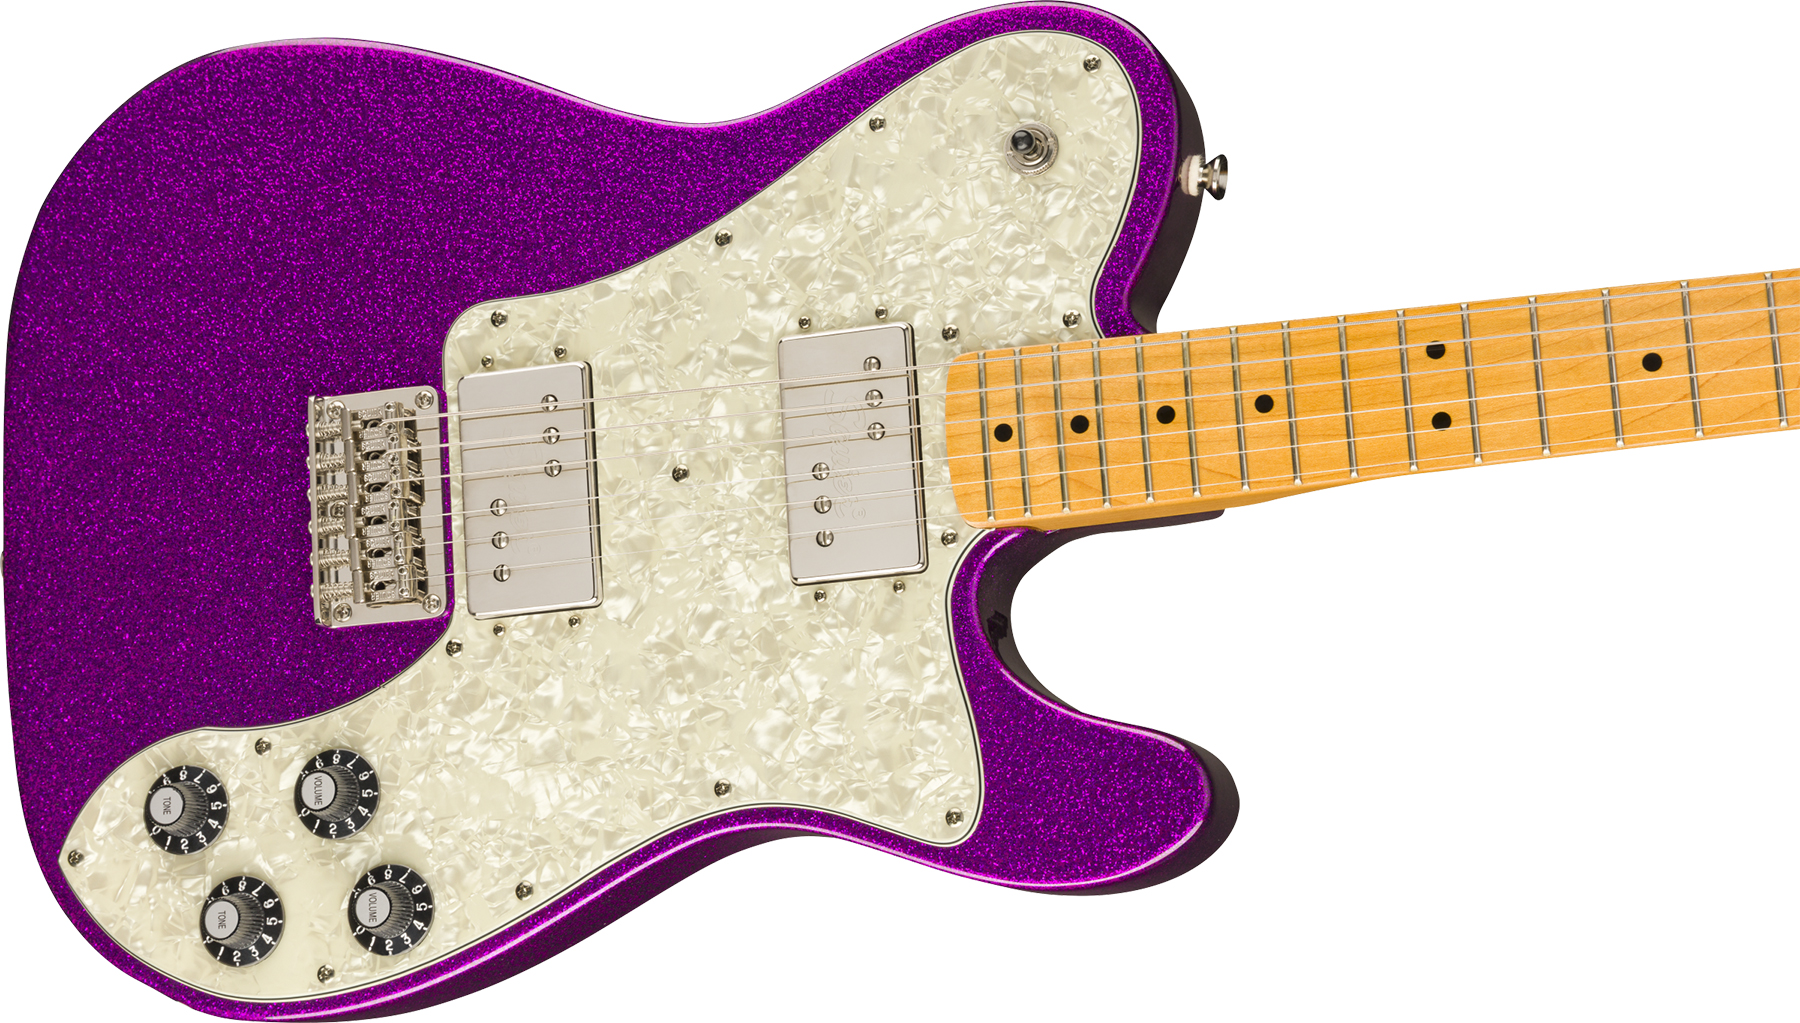 Squier Tele Deluxe Classic Vibe 70 Fsr Ltd 2020 Hh Htmn - Purple Sparkle - Tel shape electric guitar - Variation 2